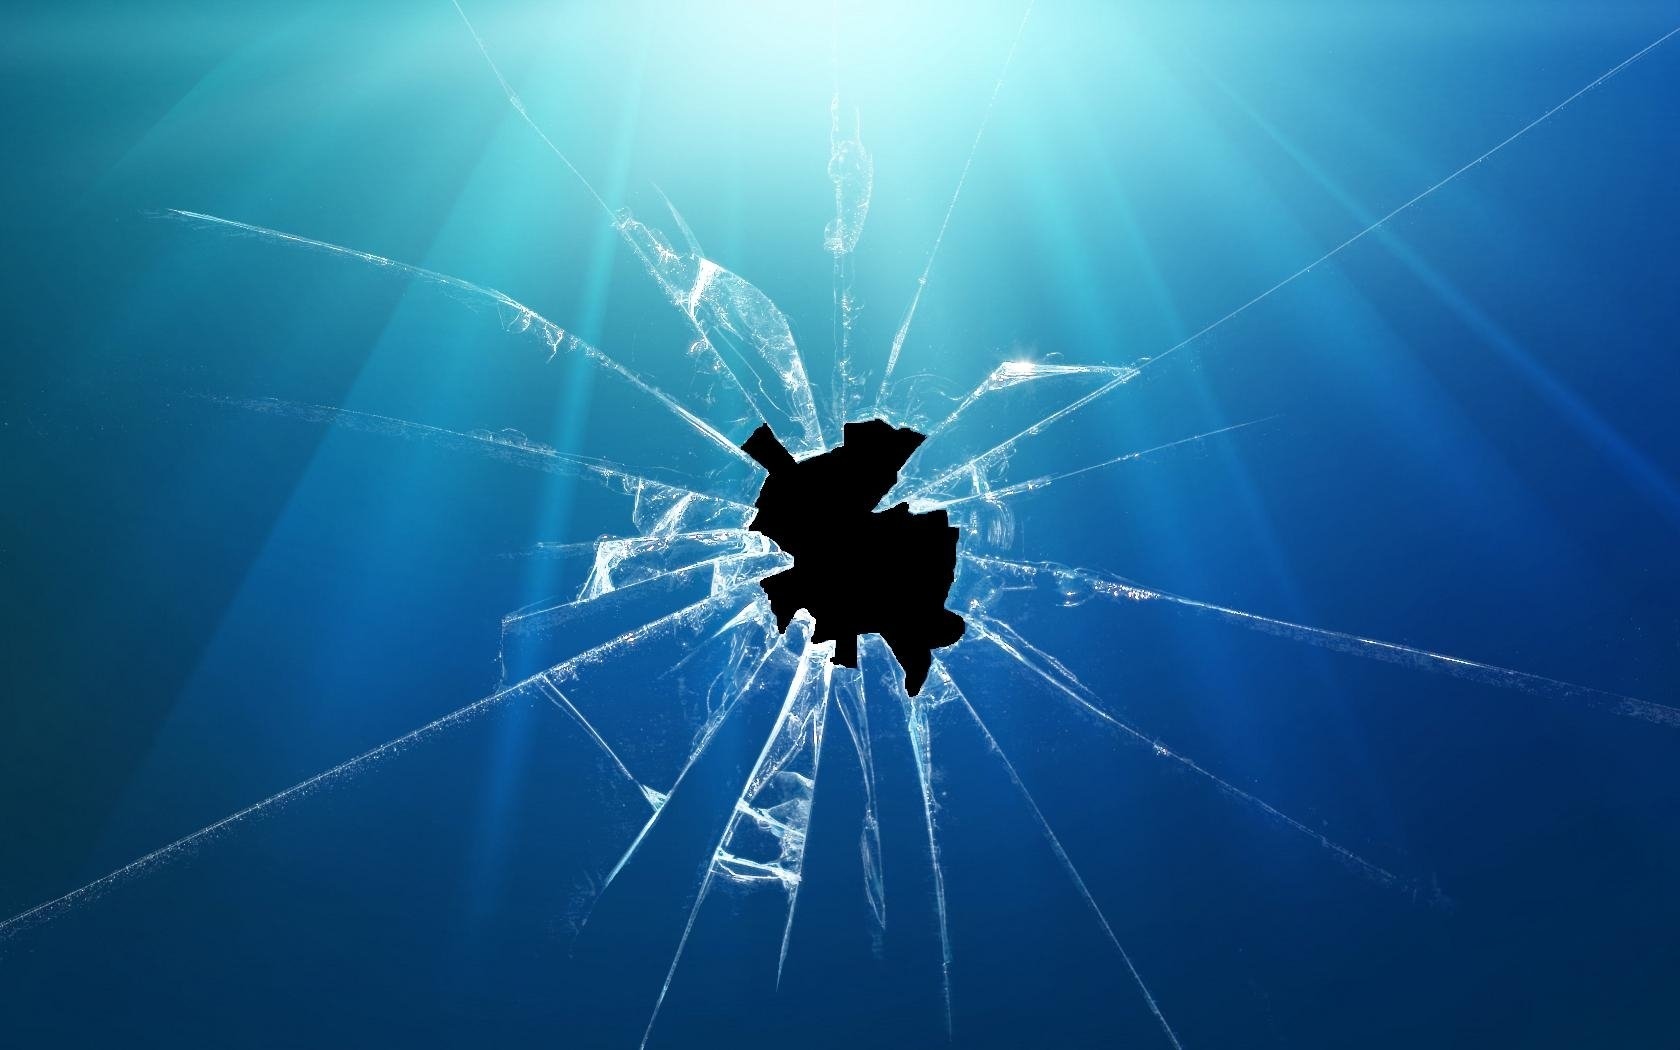 Display Crack - Broken Glass